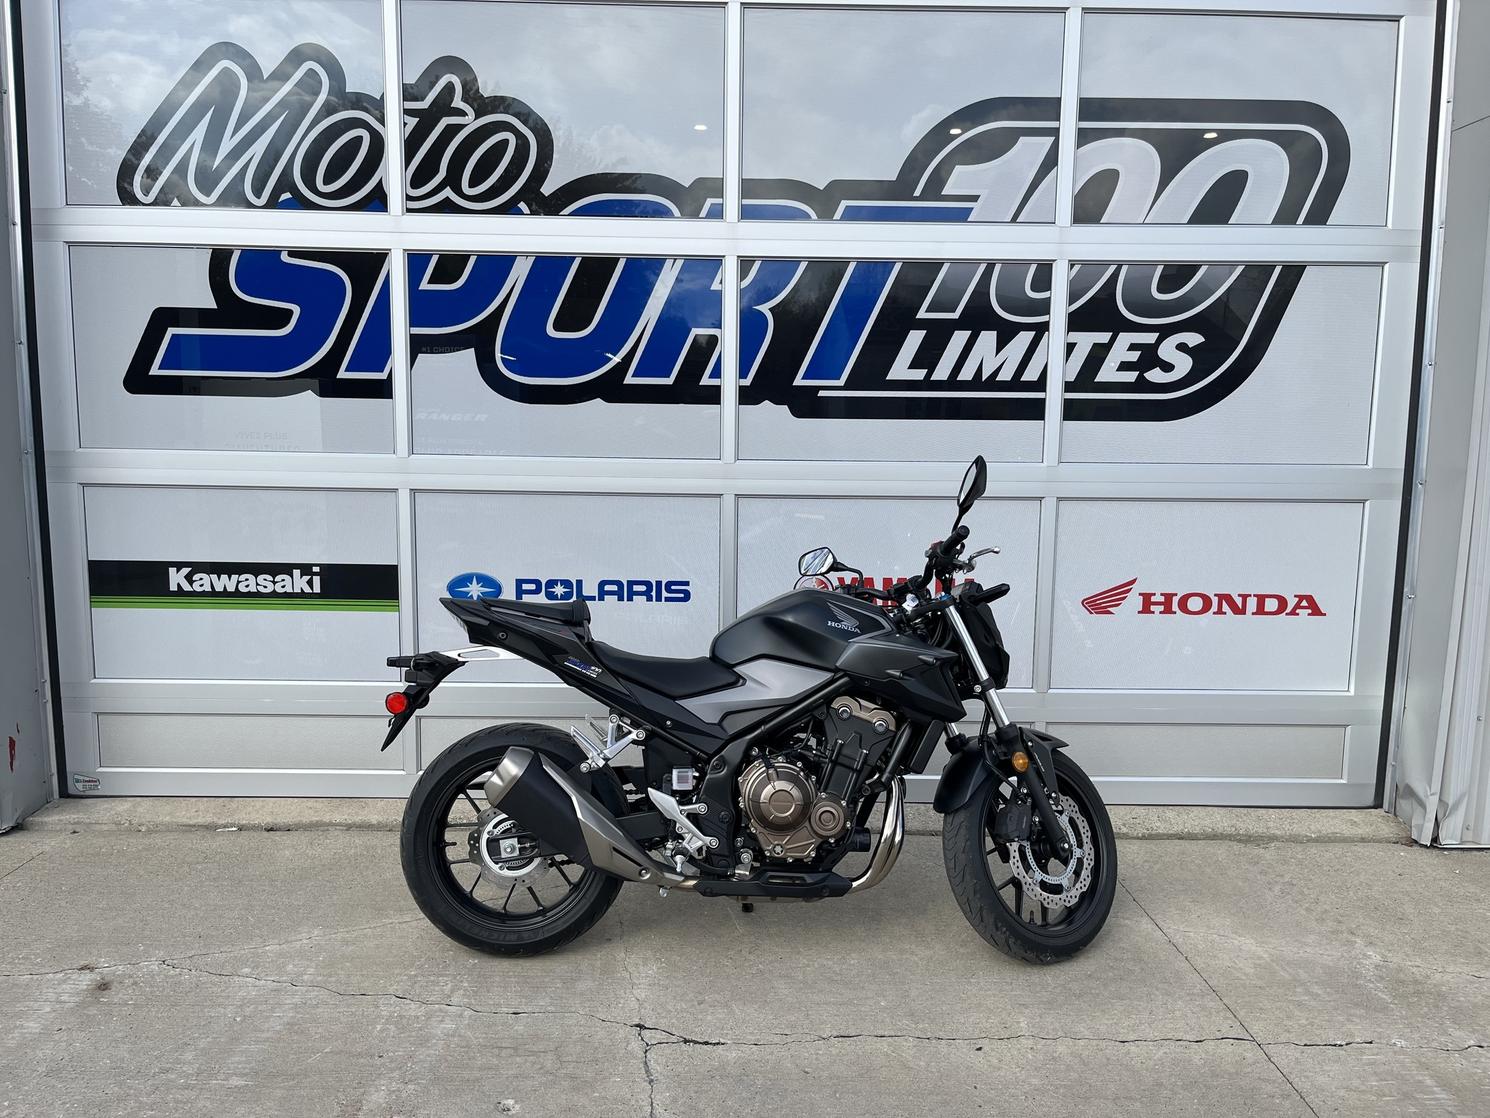 Honda CB 500F 2021